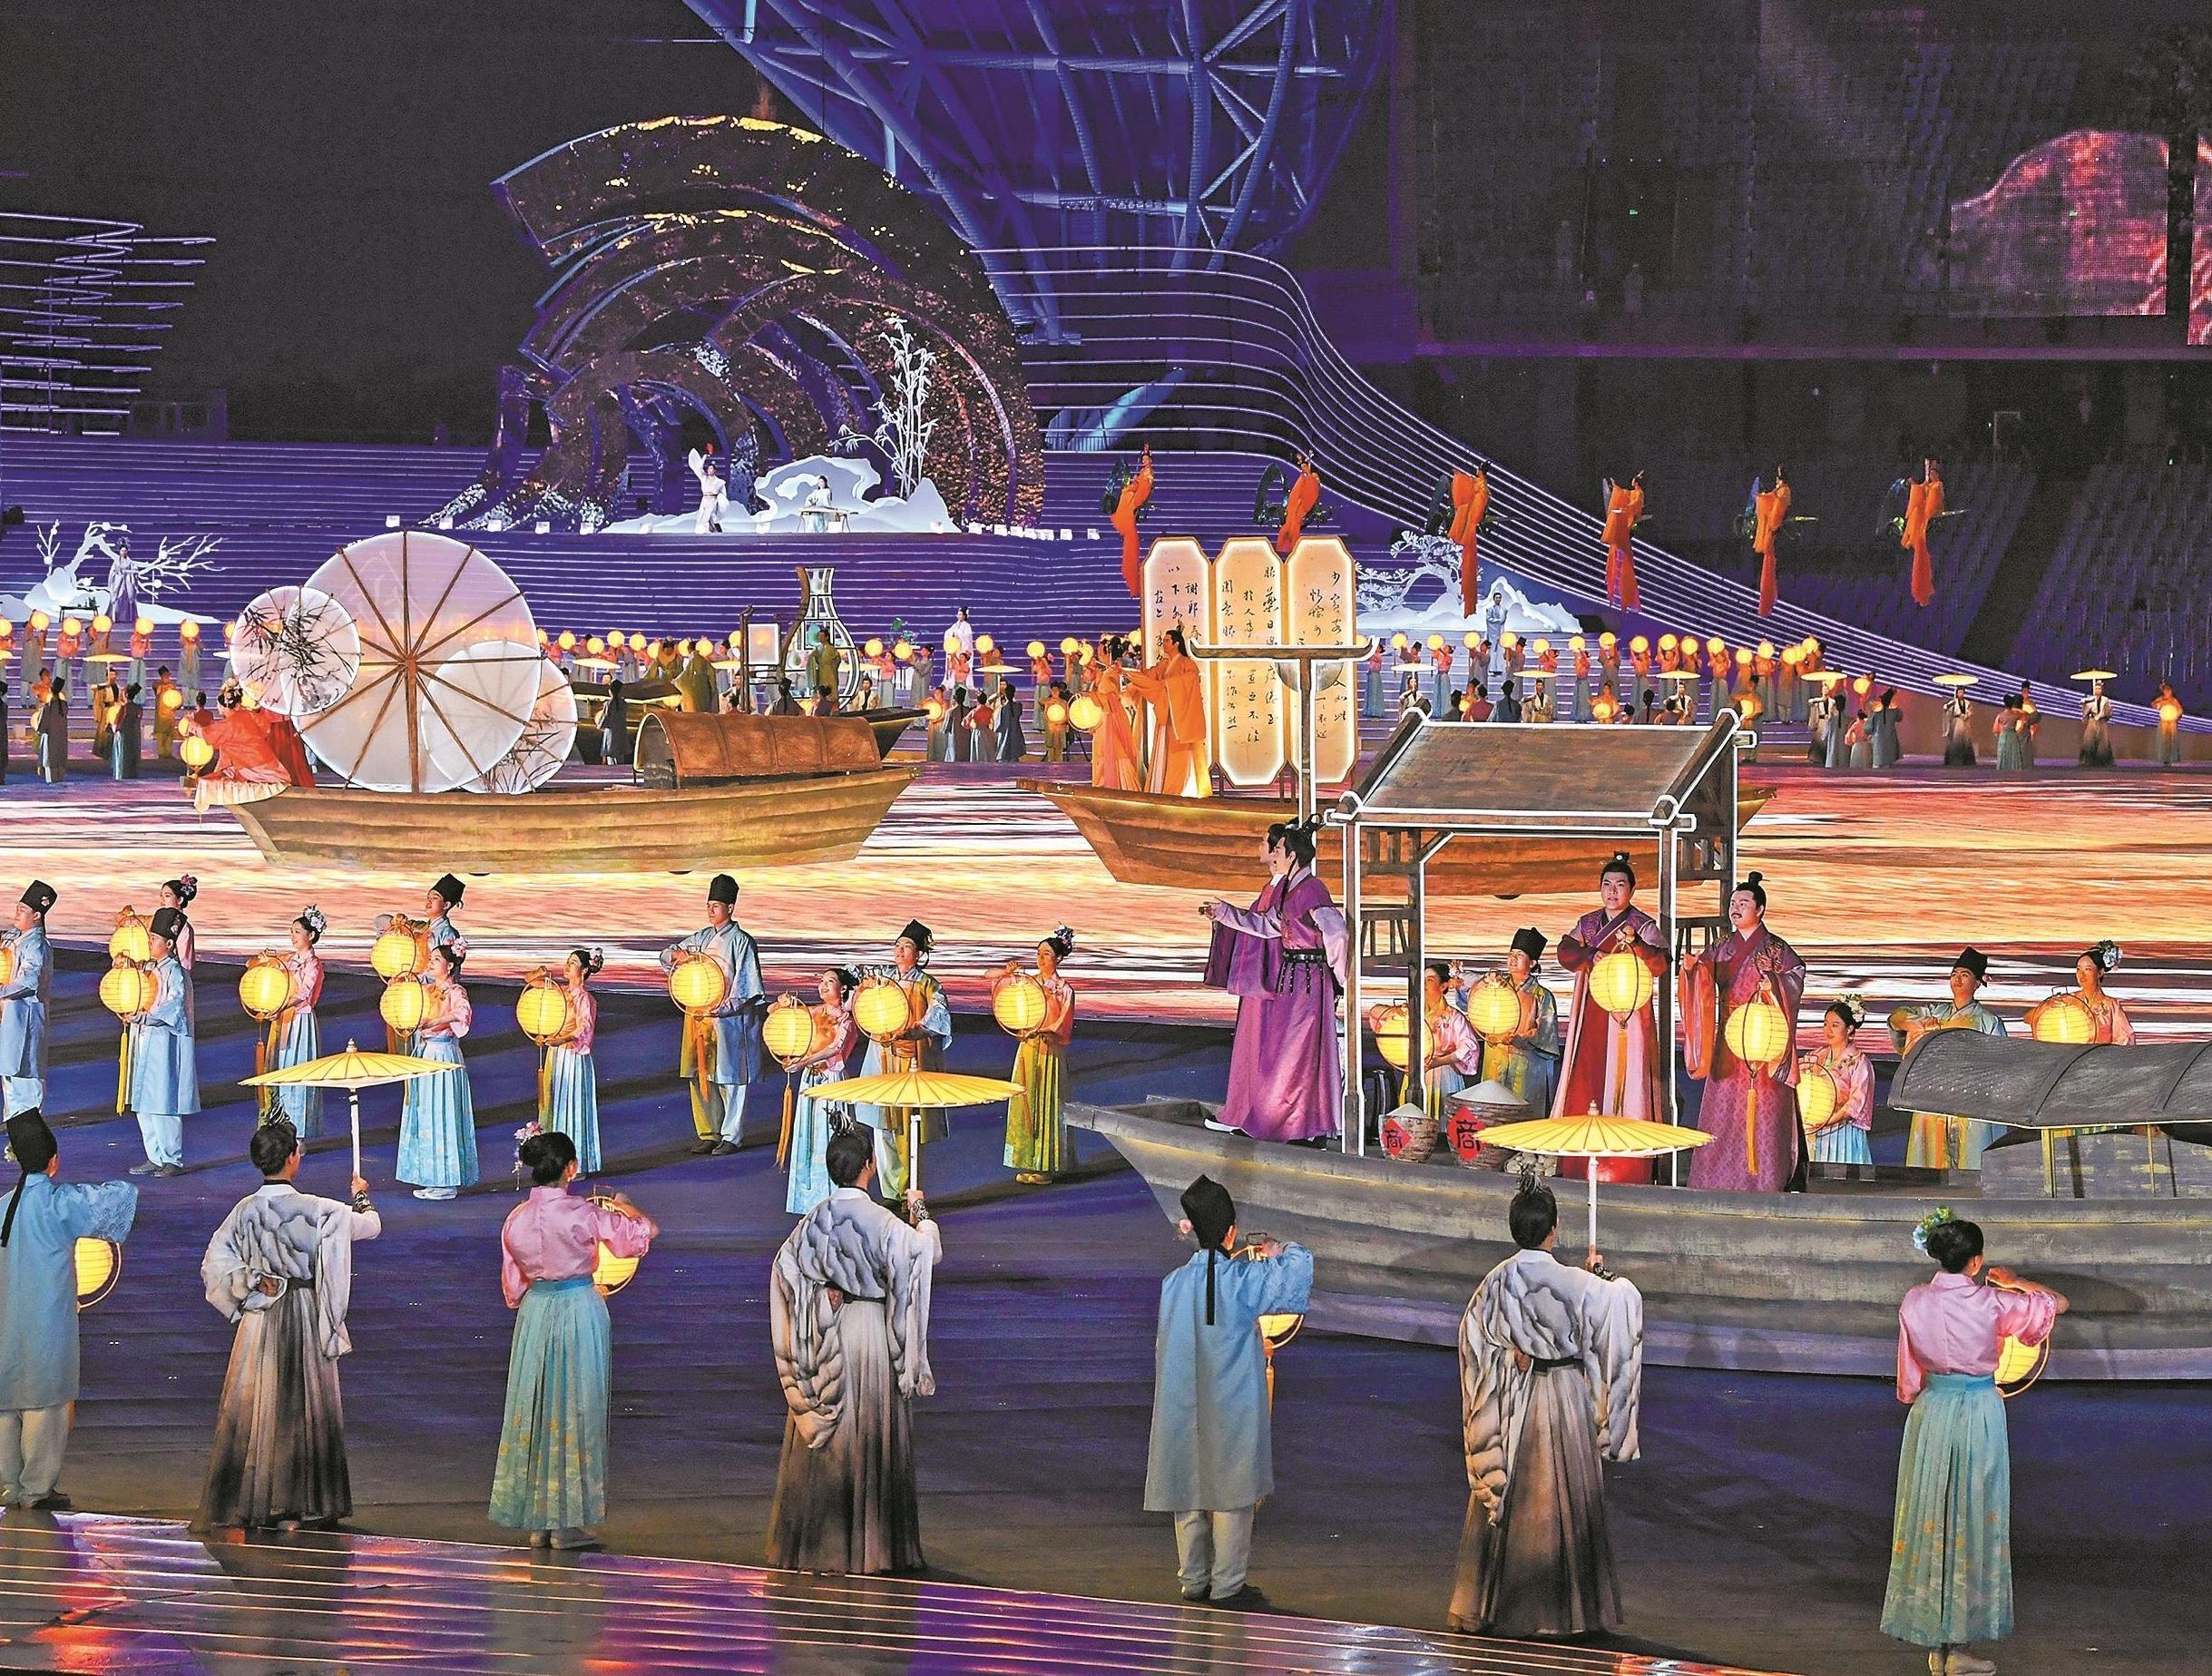  国风沁人心 万里尚为邻 观众点赞杭州亚运会开幕式